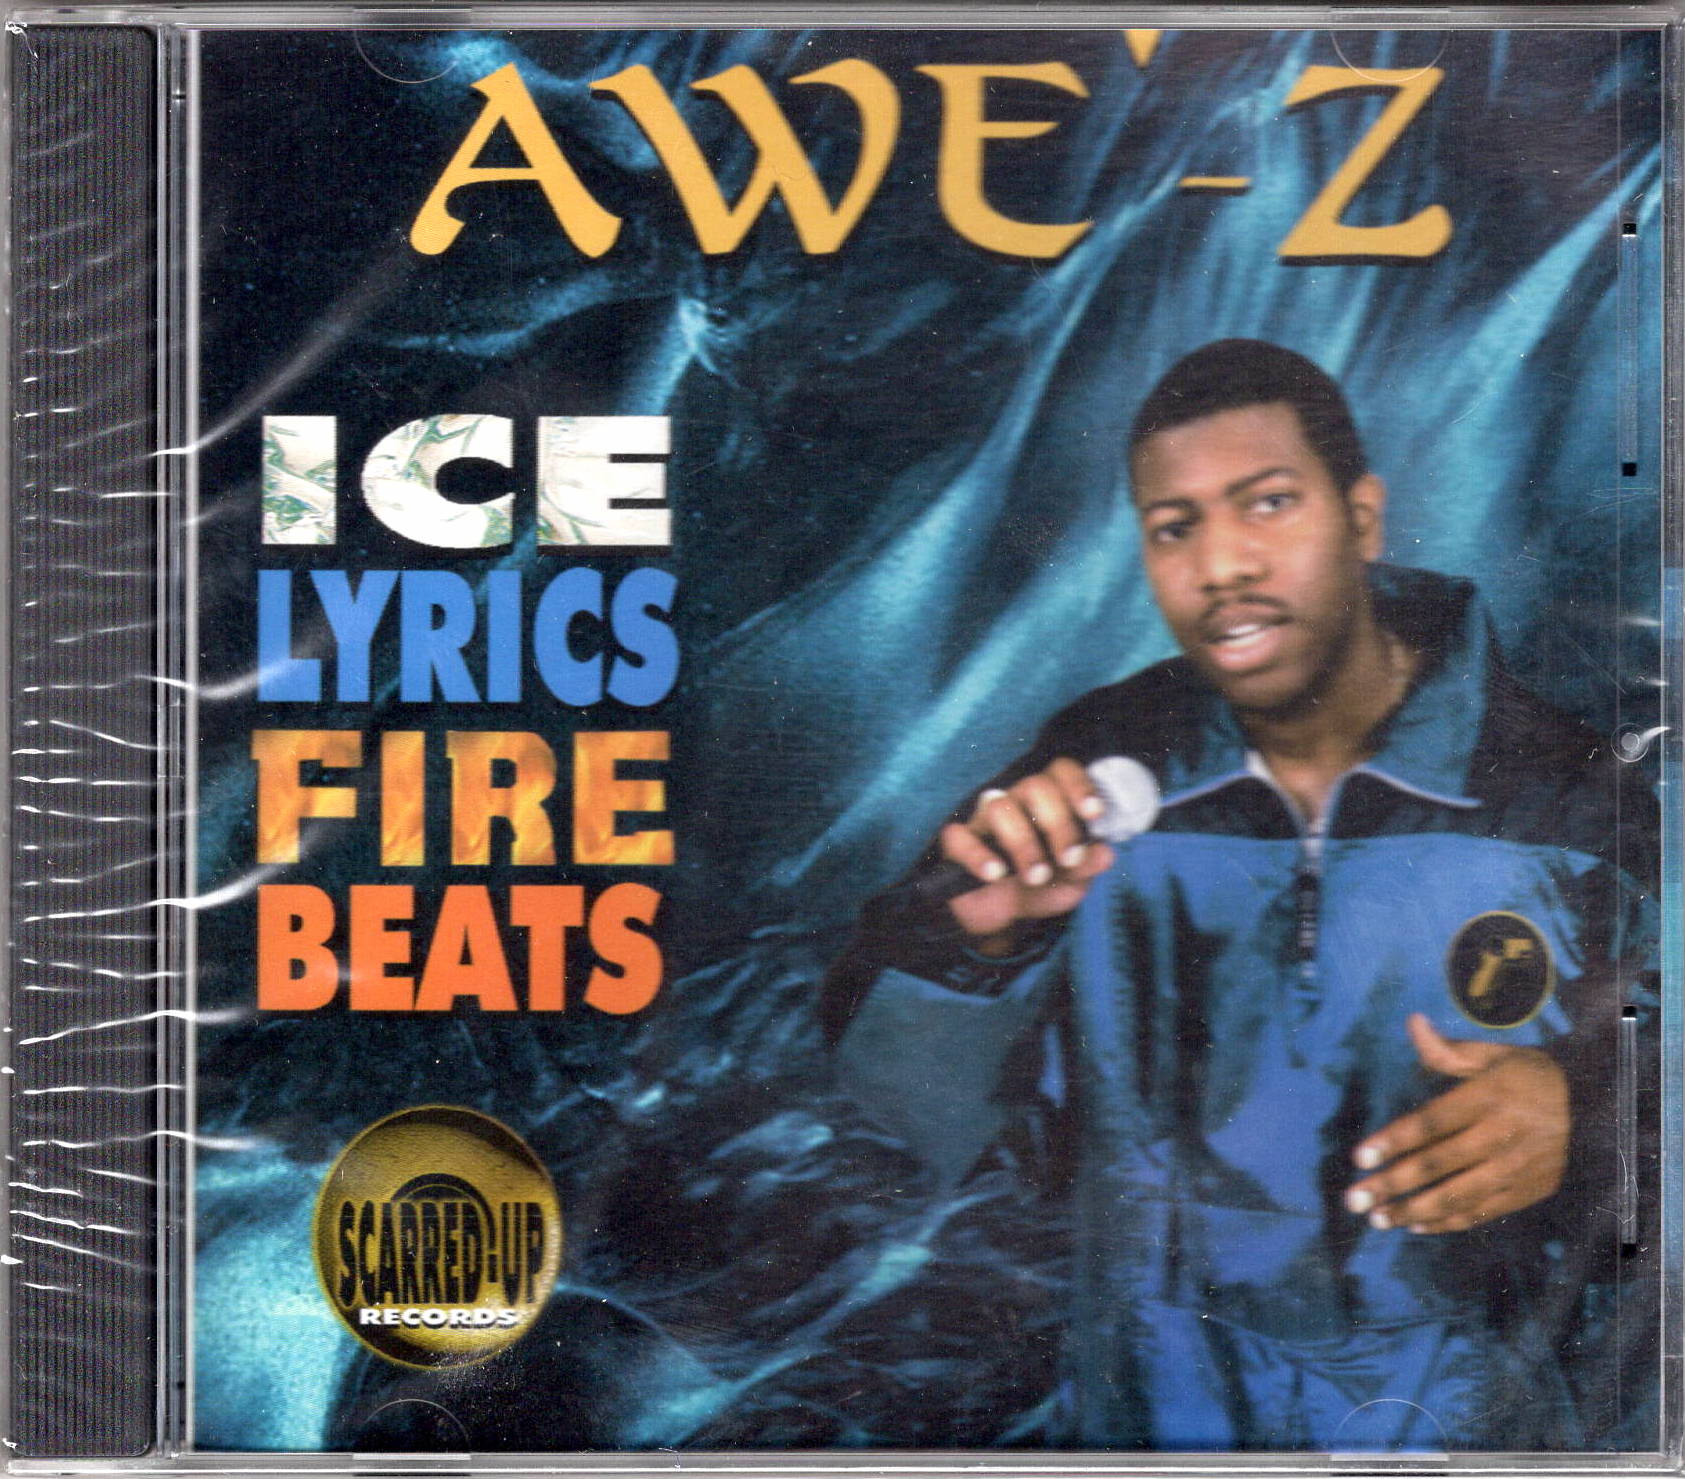 Awe'Z-Ice Lyrics Fire Beats CD (1998) – Strut Dog Records